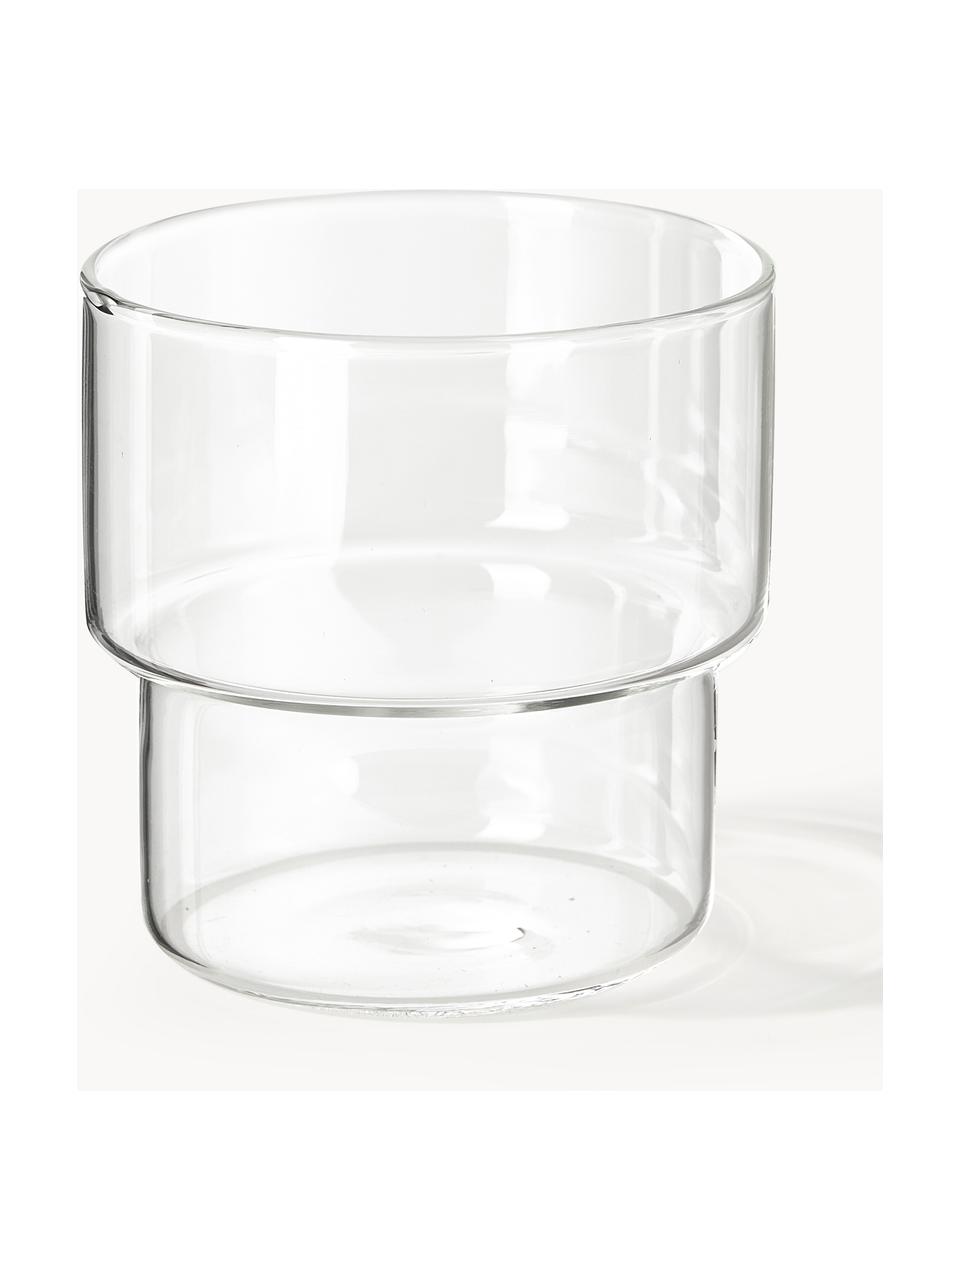 Bicchieri acqua in vetro soffiato Gustave 4 pz, Vetro borosilicato, Trasparente, grigio chiaro, petrolio, arancione, Ø 8 x Alt. 9 cm, 300 ml